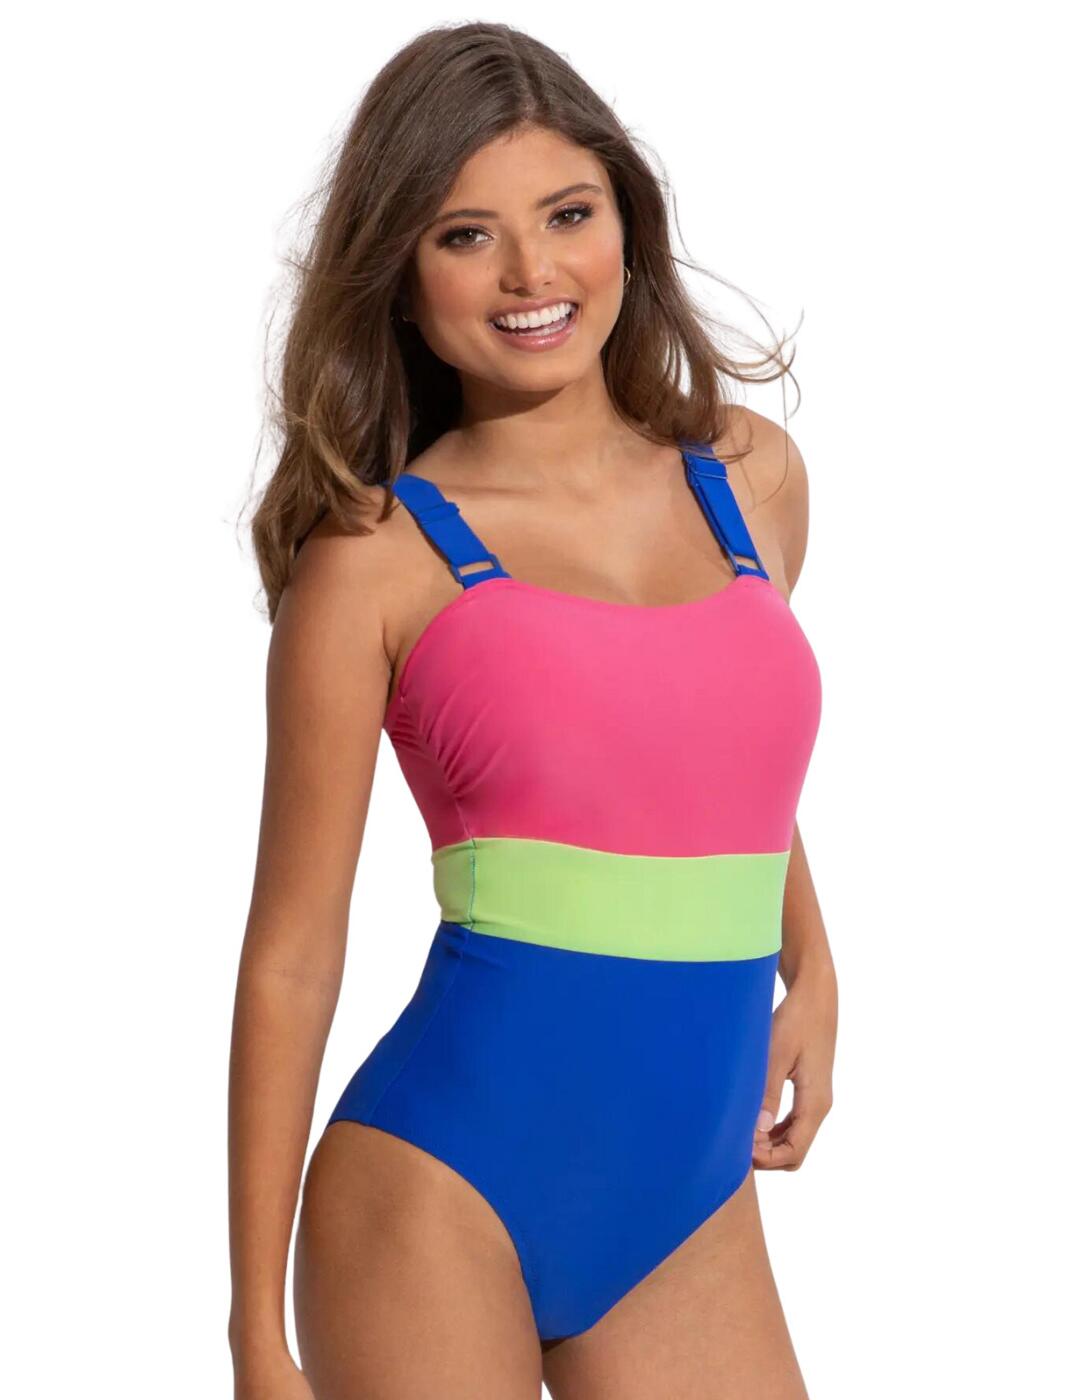 Pour Moi Palm Springs Colour Block Tummy Control Swimsuit - Belle Lingerie